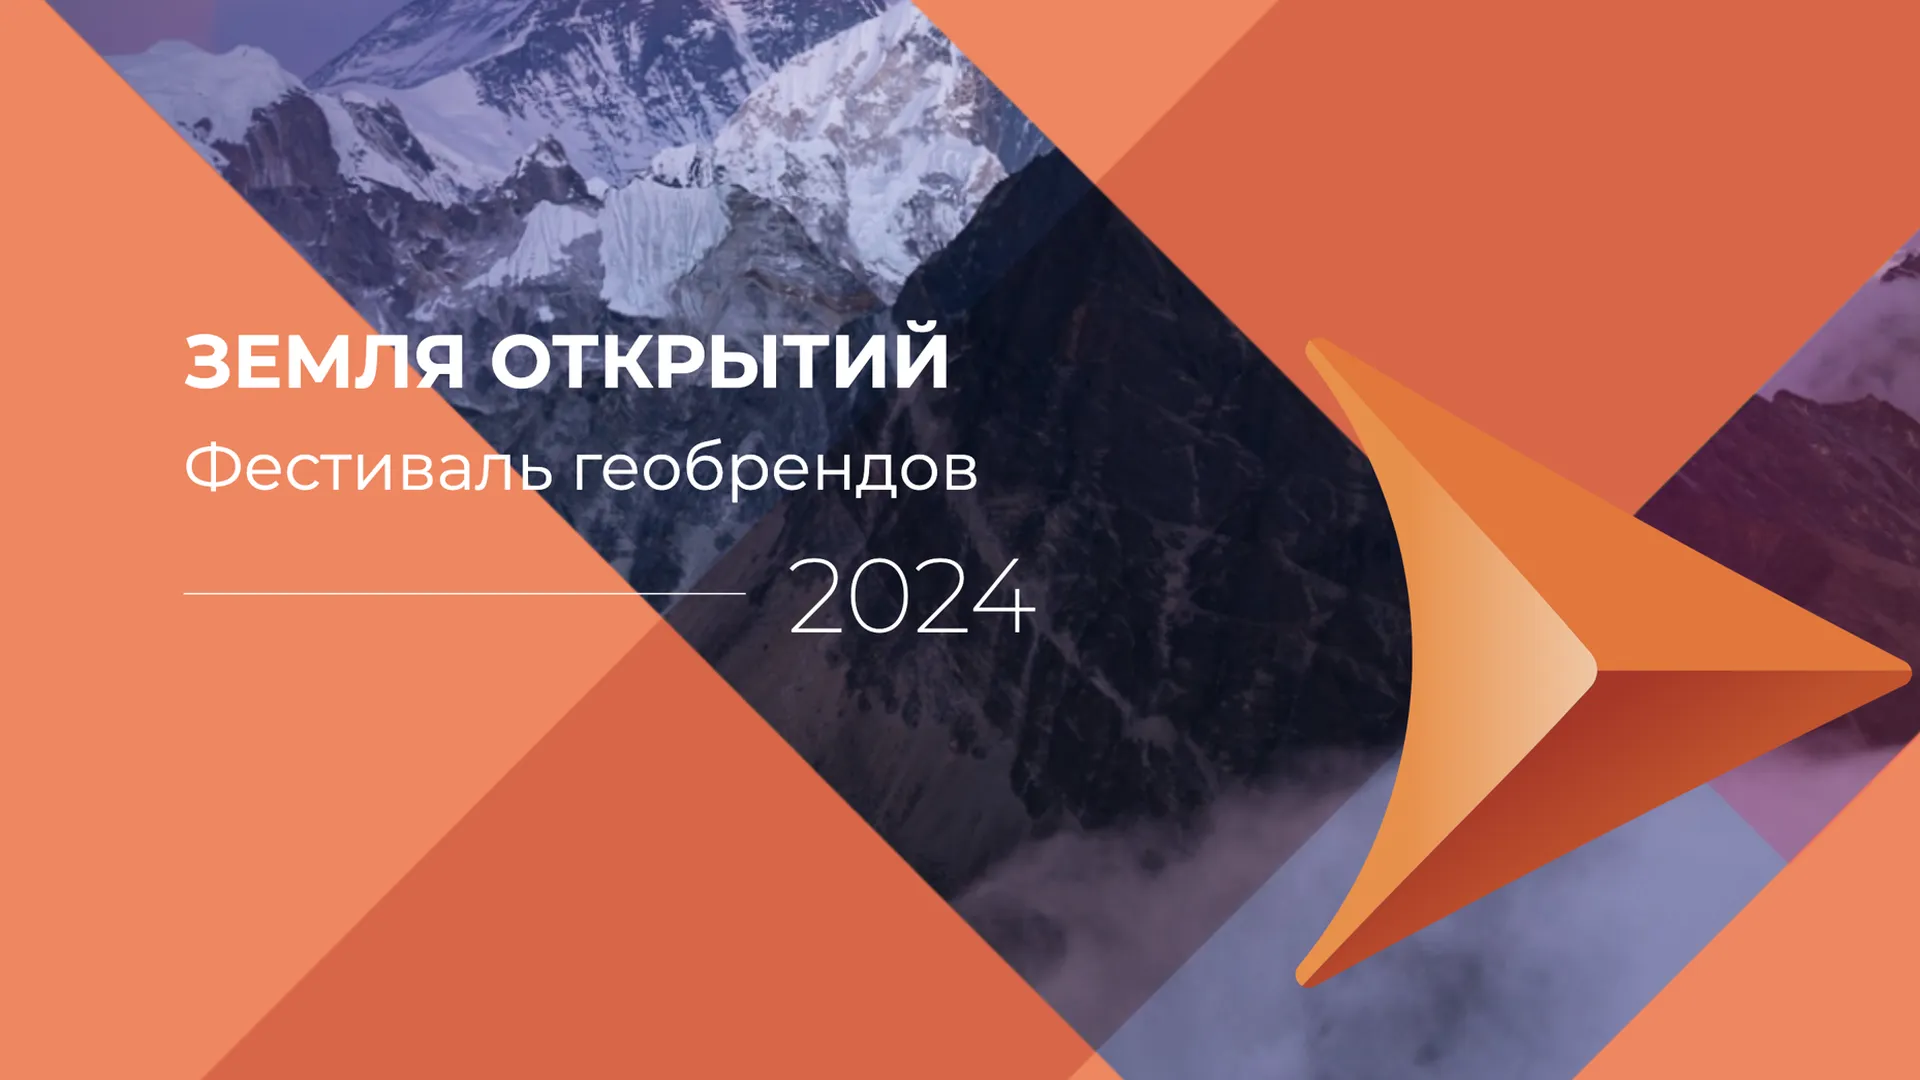 Жители Подмосковья могут подать заявку на фестиваль «Земля открытий» до 1 мая